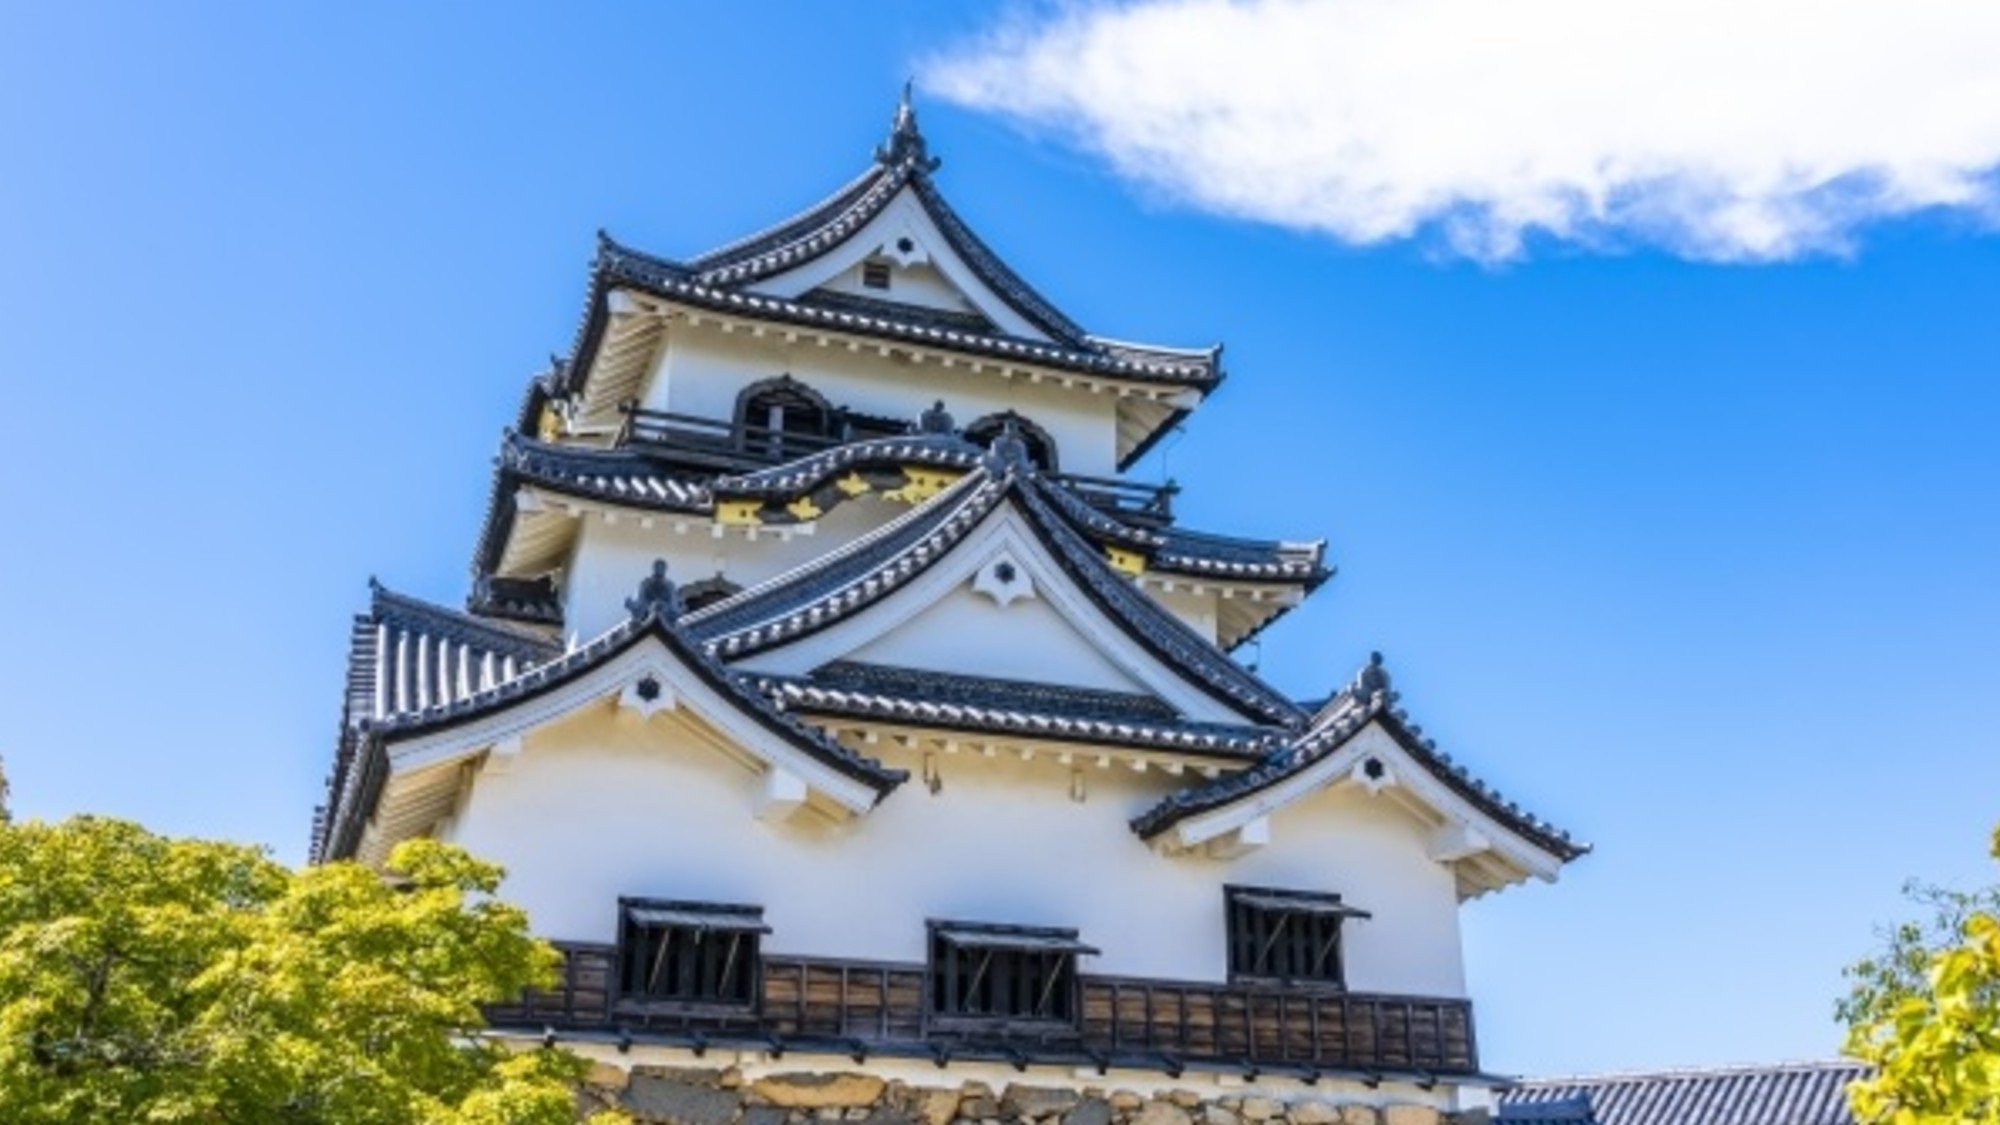 【滋賀】国宝に指定されている彦根城。天守はもちろん、博物館もあり見所いっぱいです